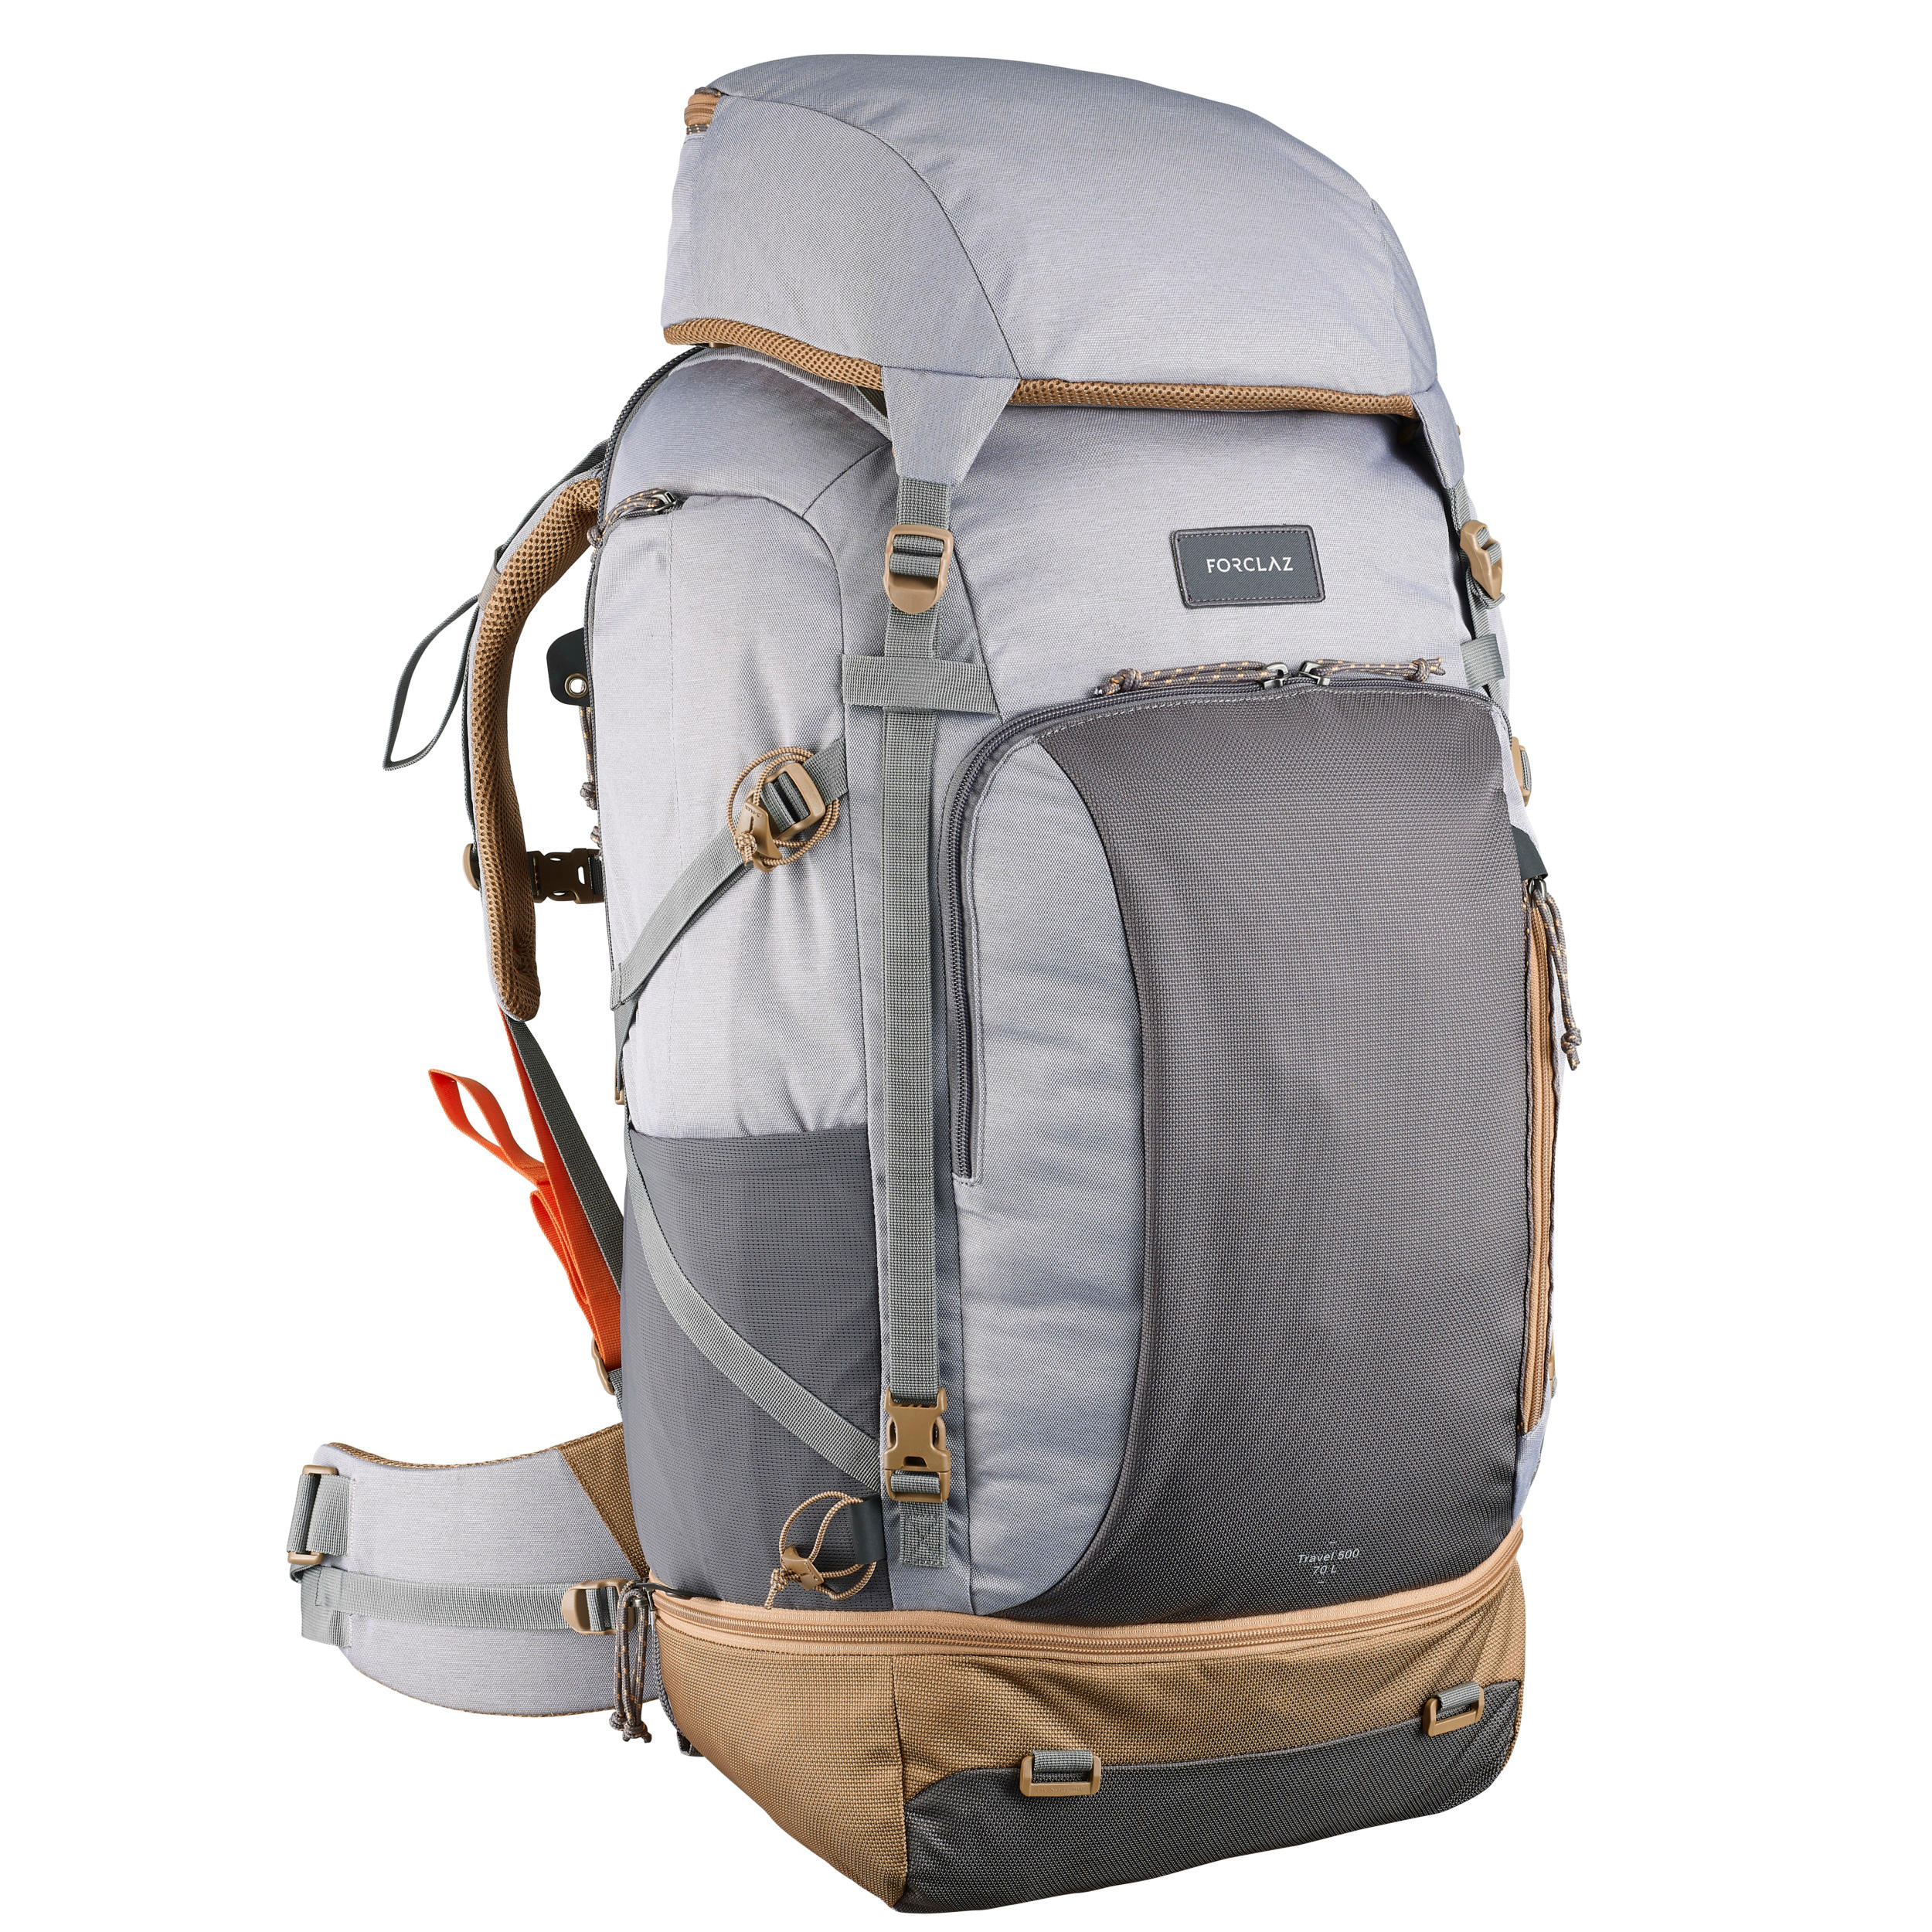 Backpacking Rucksack Travel 500 70 Liter abschließbar Damen grau ... - Backpacking+Rucksack+Travel+500+70+Liter+abschlie+bar+Damen+grau